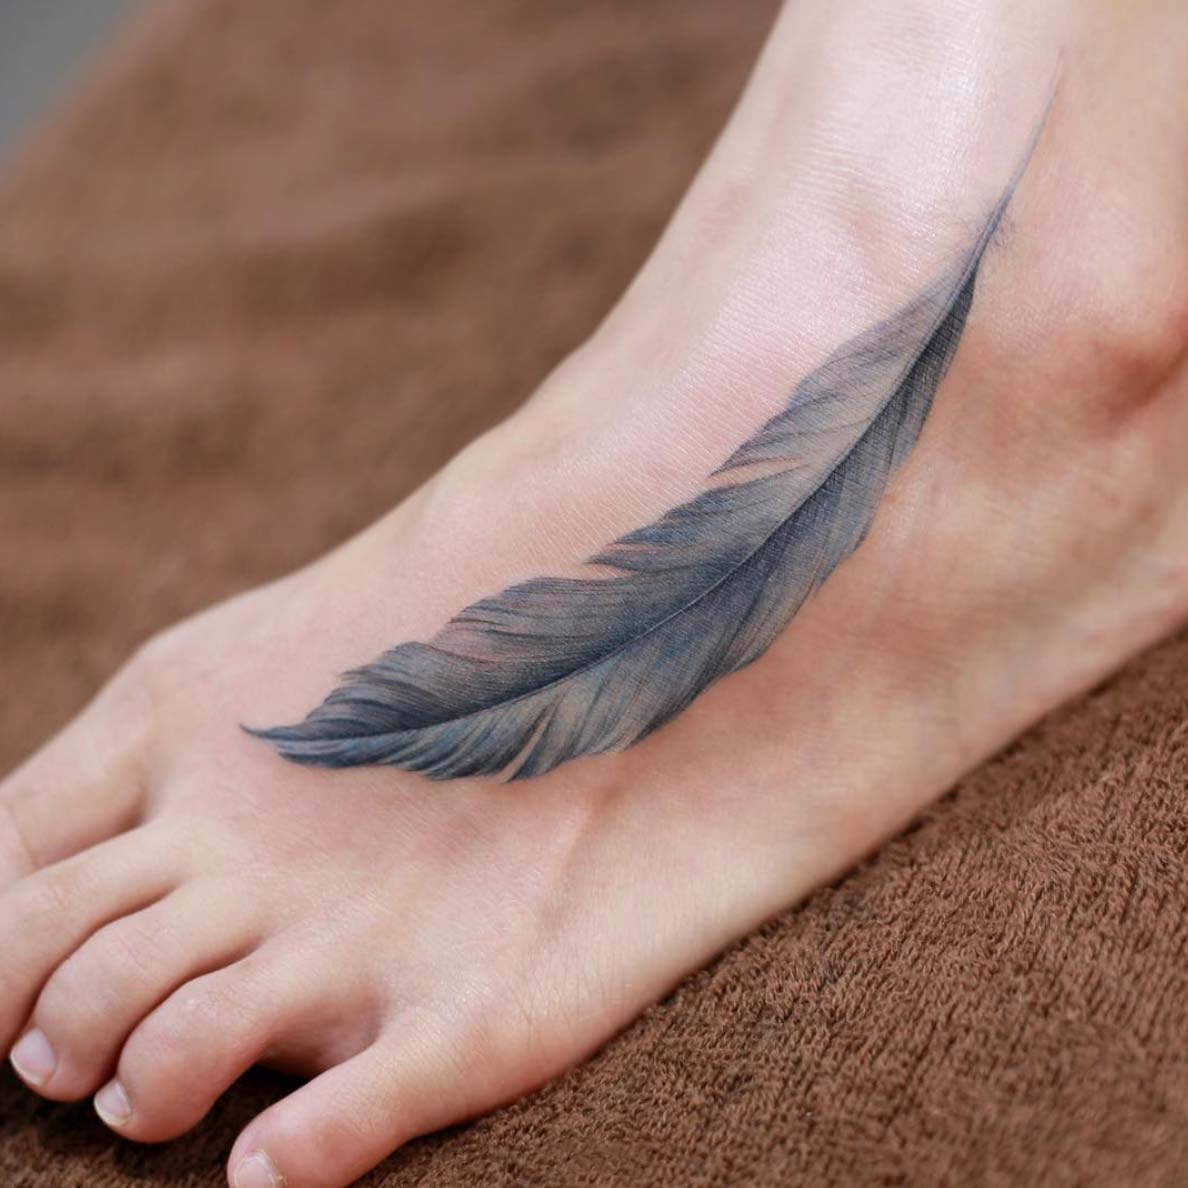 tatuagem feminina no pé de penas 2021